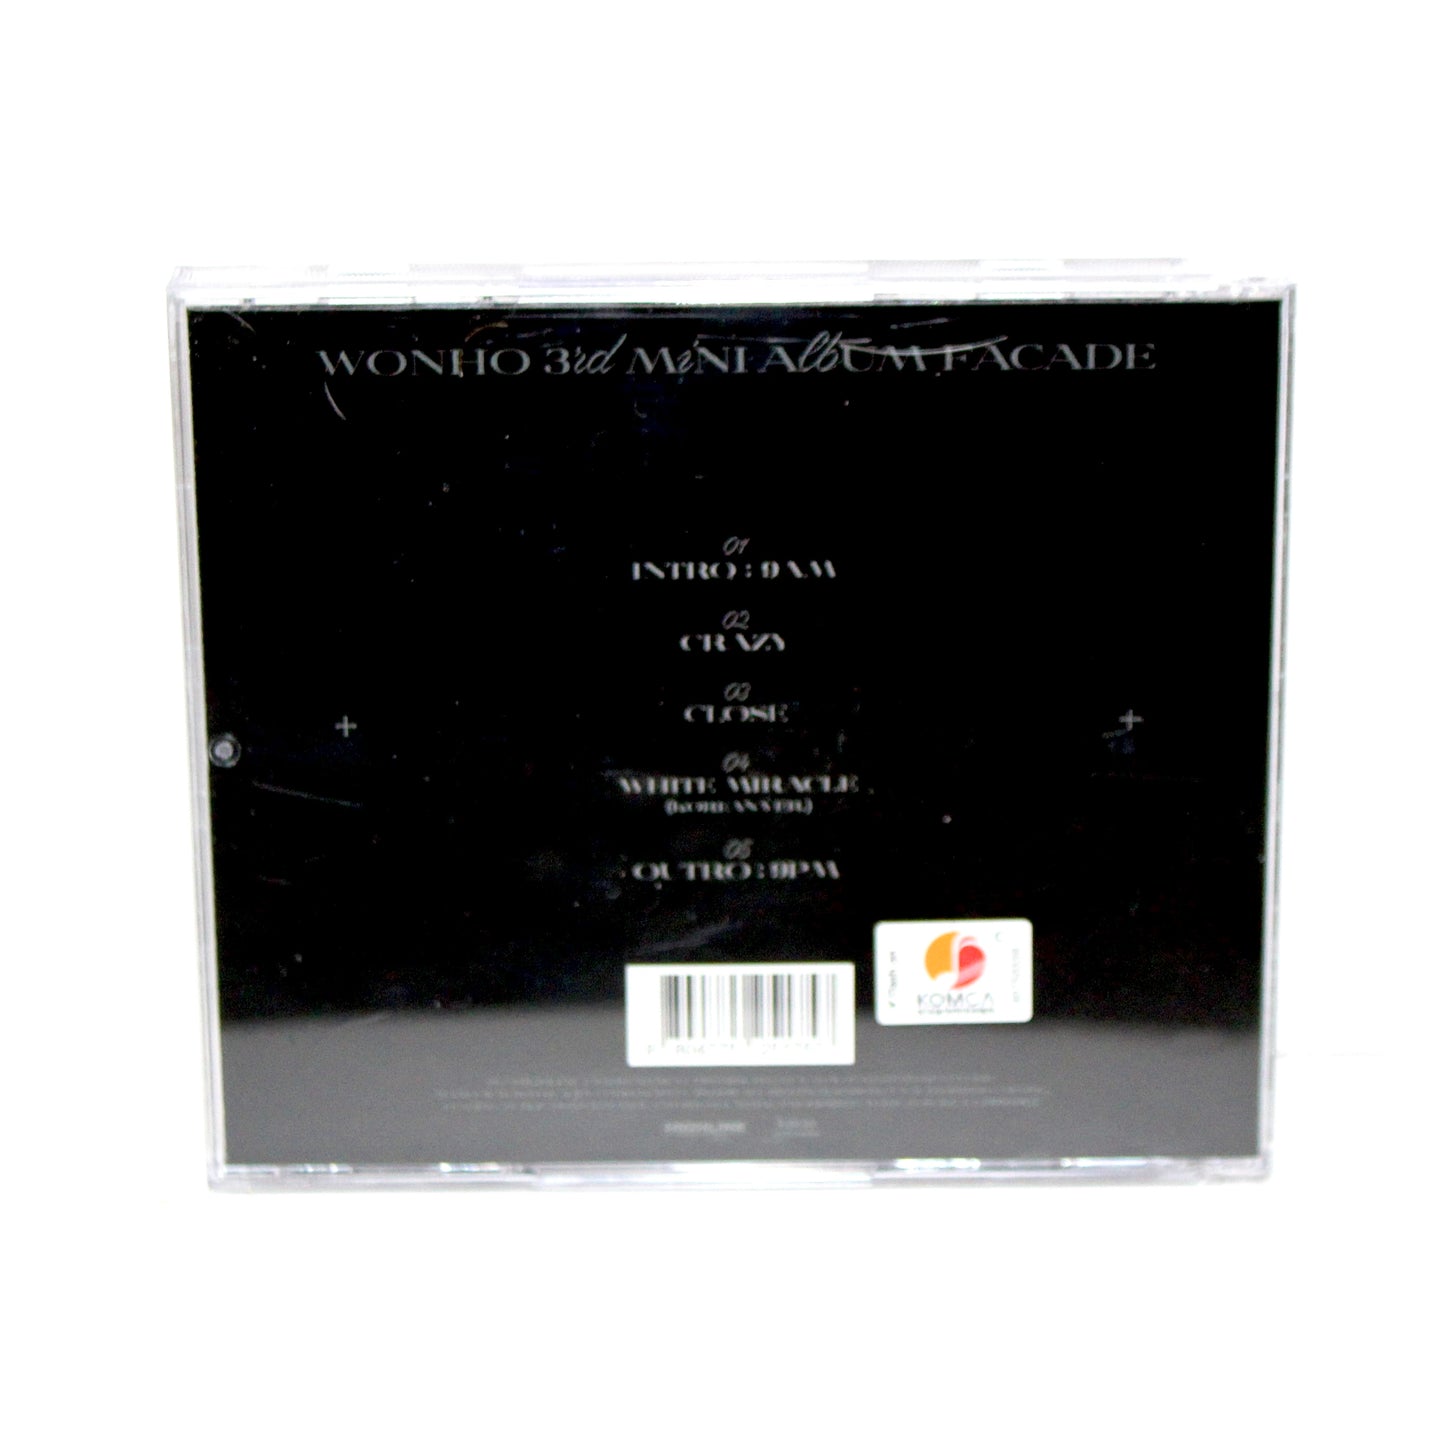 WONHO 3rd Mini Album: Facade - Ver. 3 | Jewel Case